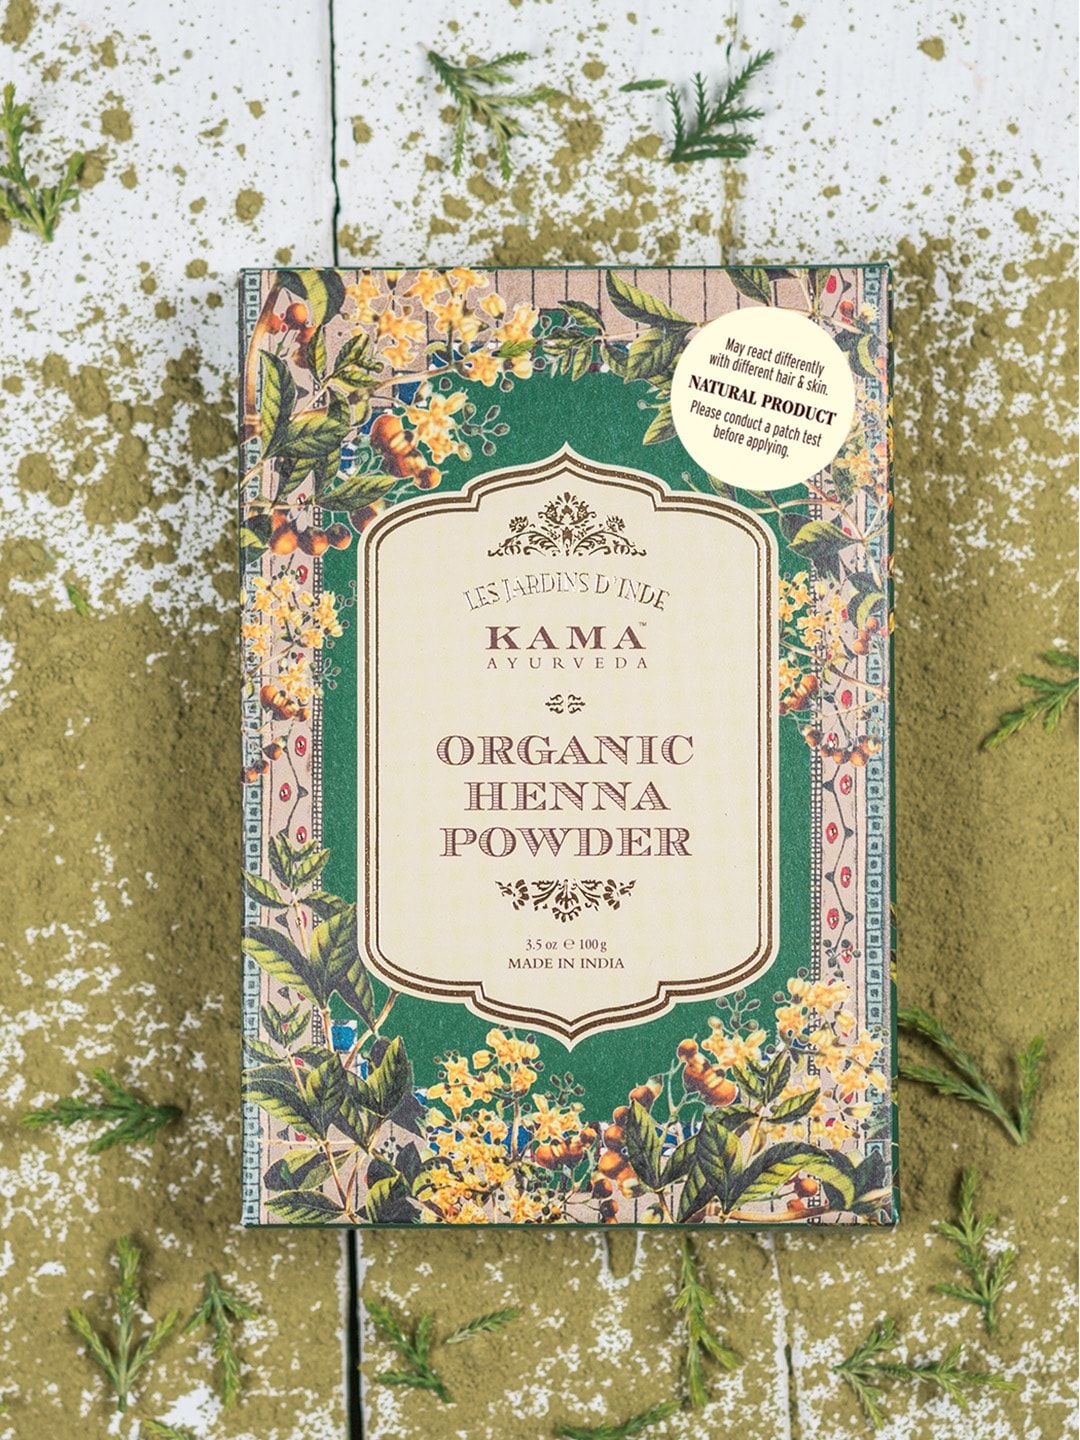 KAMA AYURVEDA Sustainable Organic Henna Powder 100 g Price in India